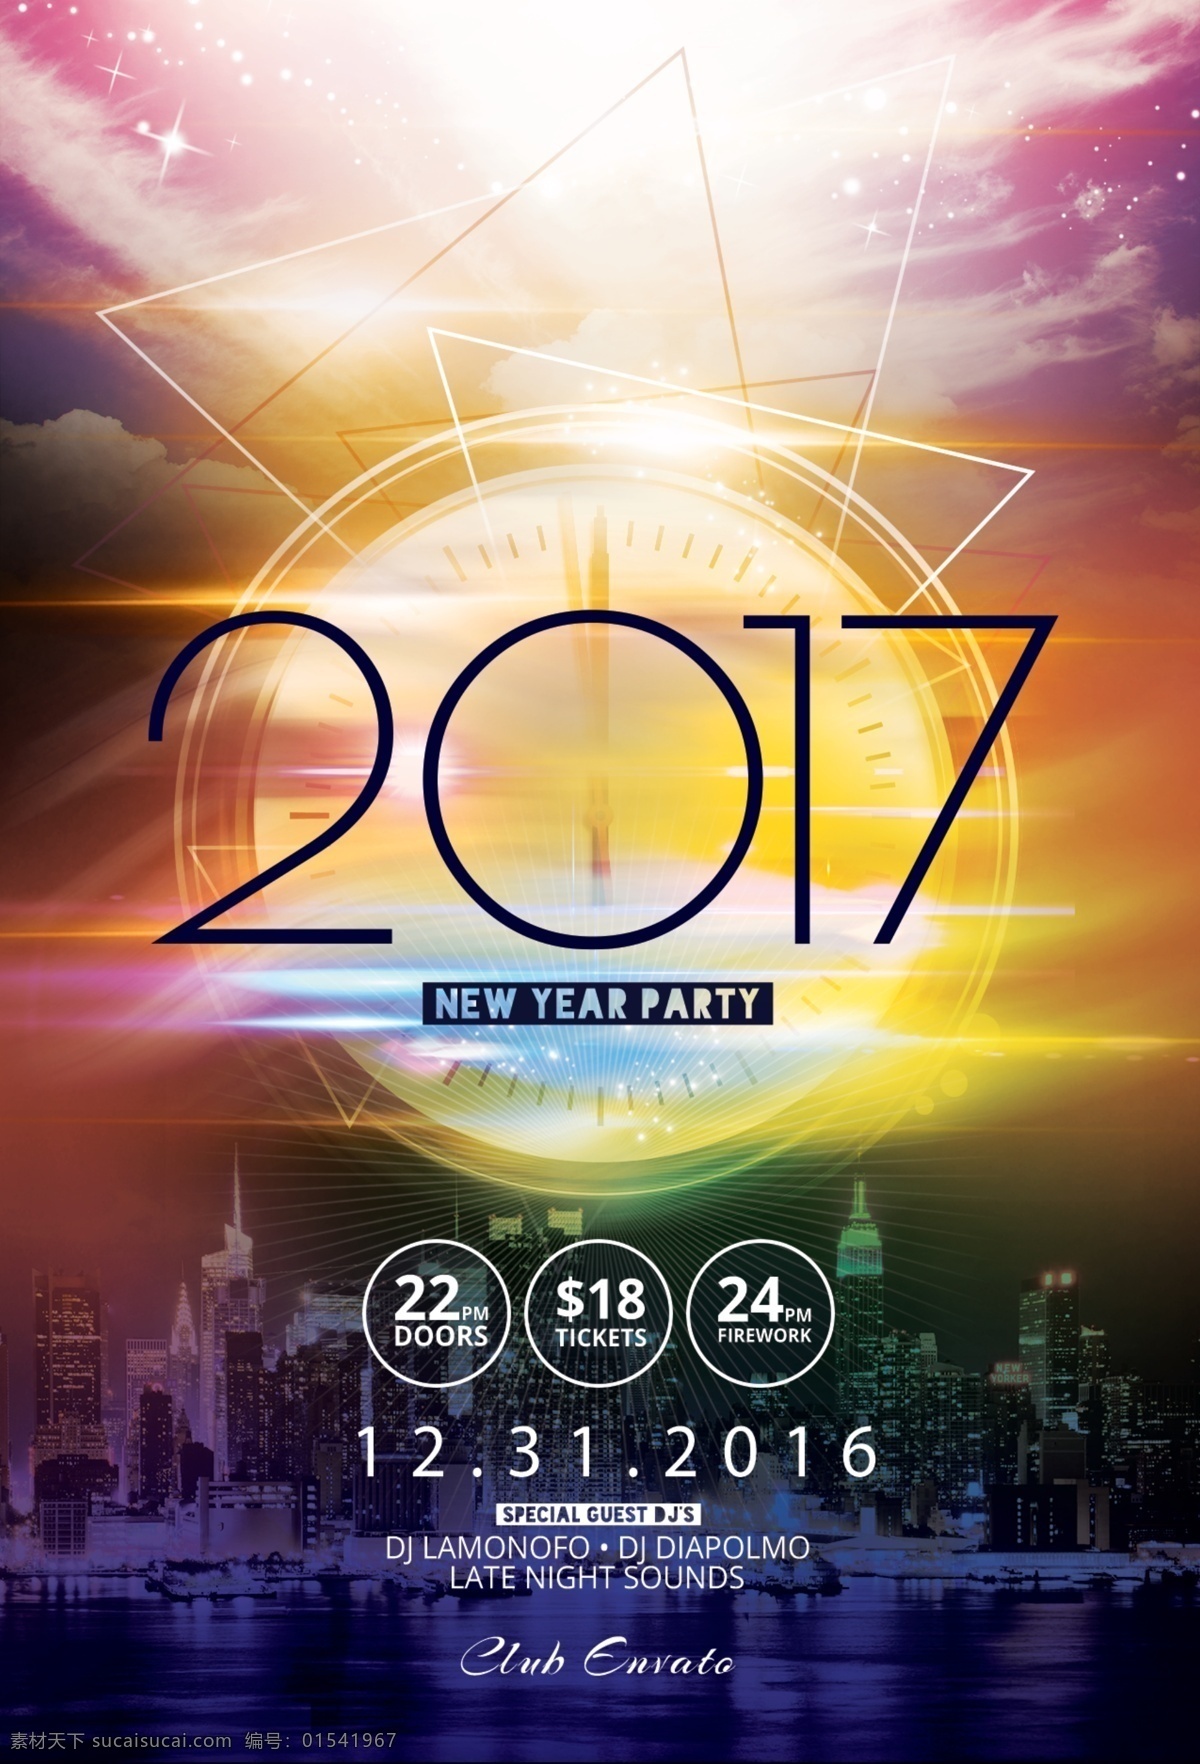 2017 酒吧 新年 party 海报 2016 展板 易拉宝 炫彩 背景 夜店 钟表 英文 建筑 上海 城市 psd分层